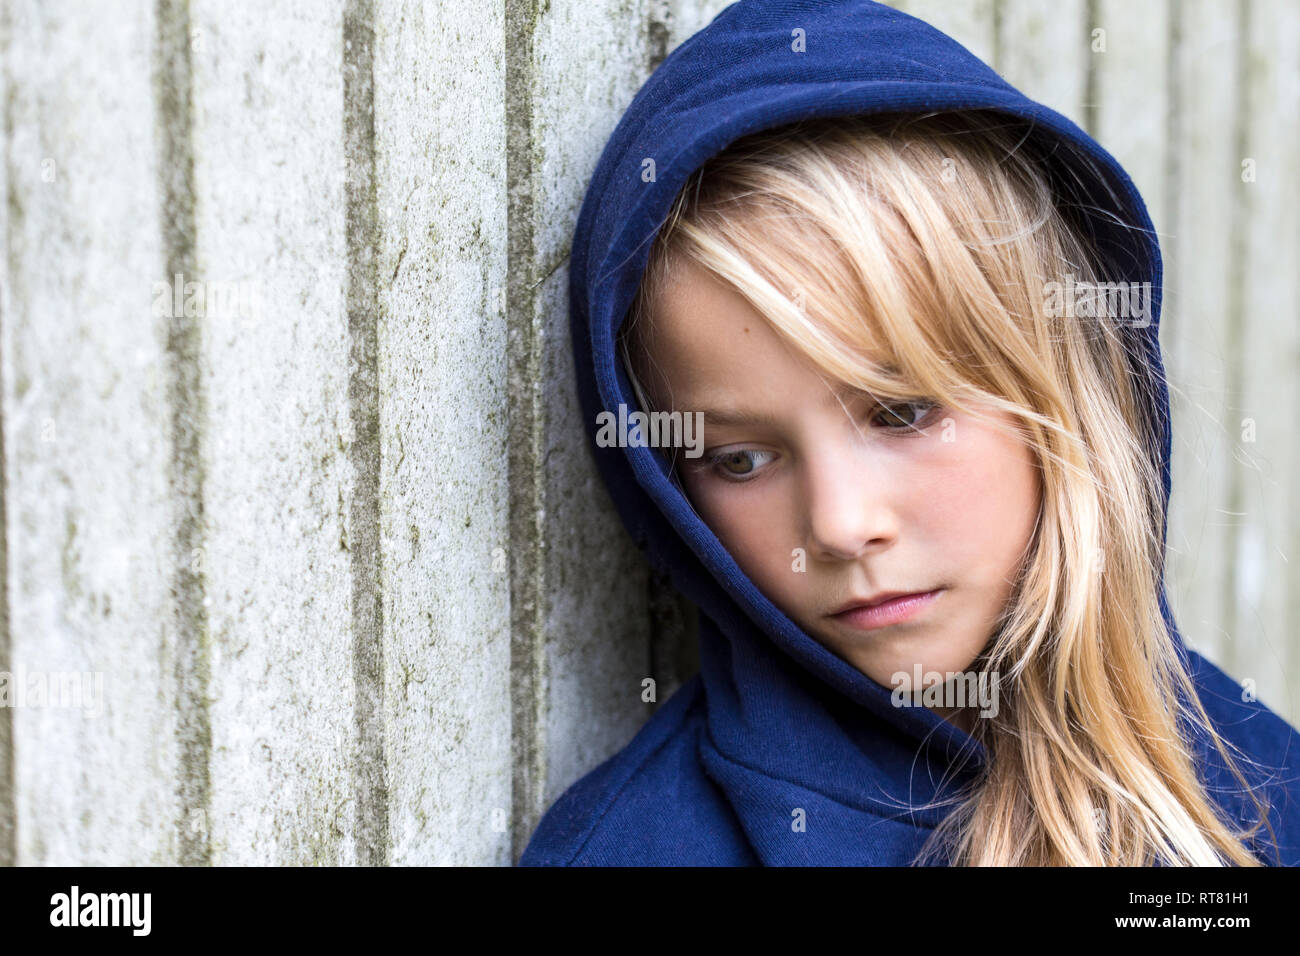 Ritratto di triste ragazza bionda che indossa il blu giacca con cappuccio appoggiata contro la parete in legno Foto Stock